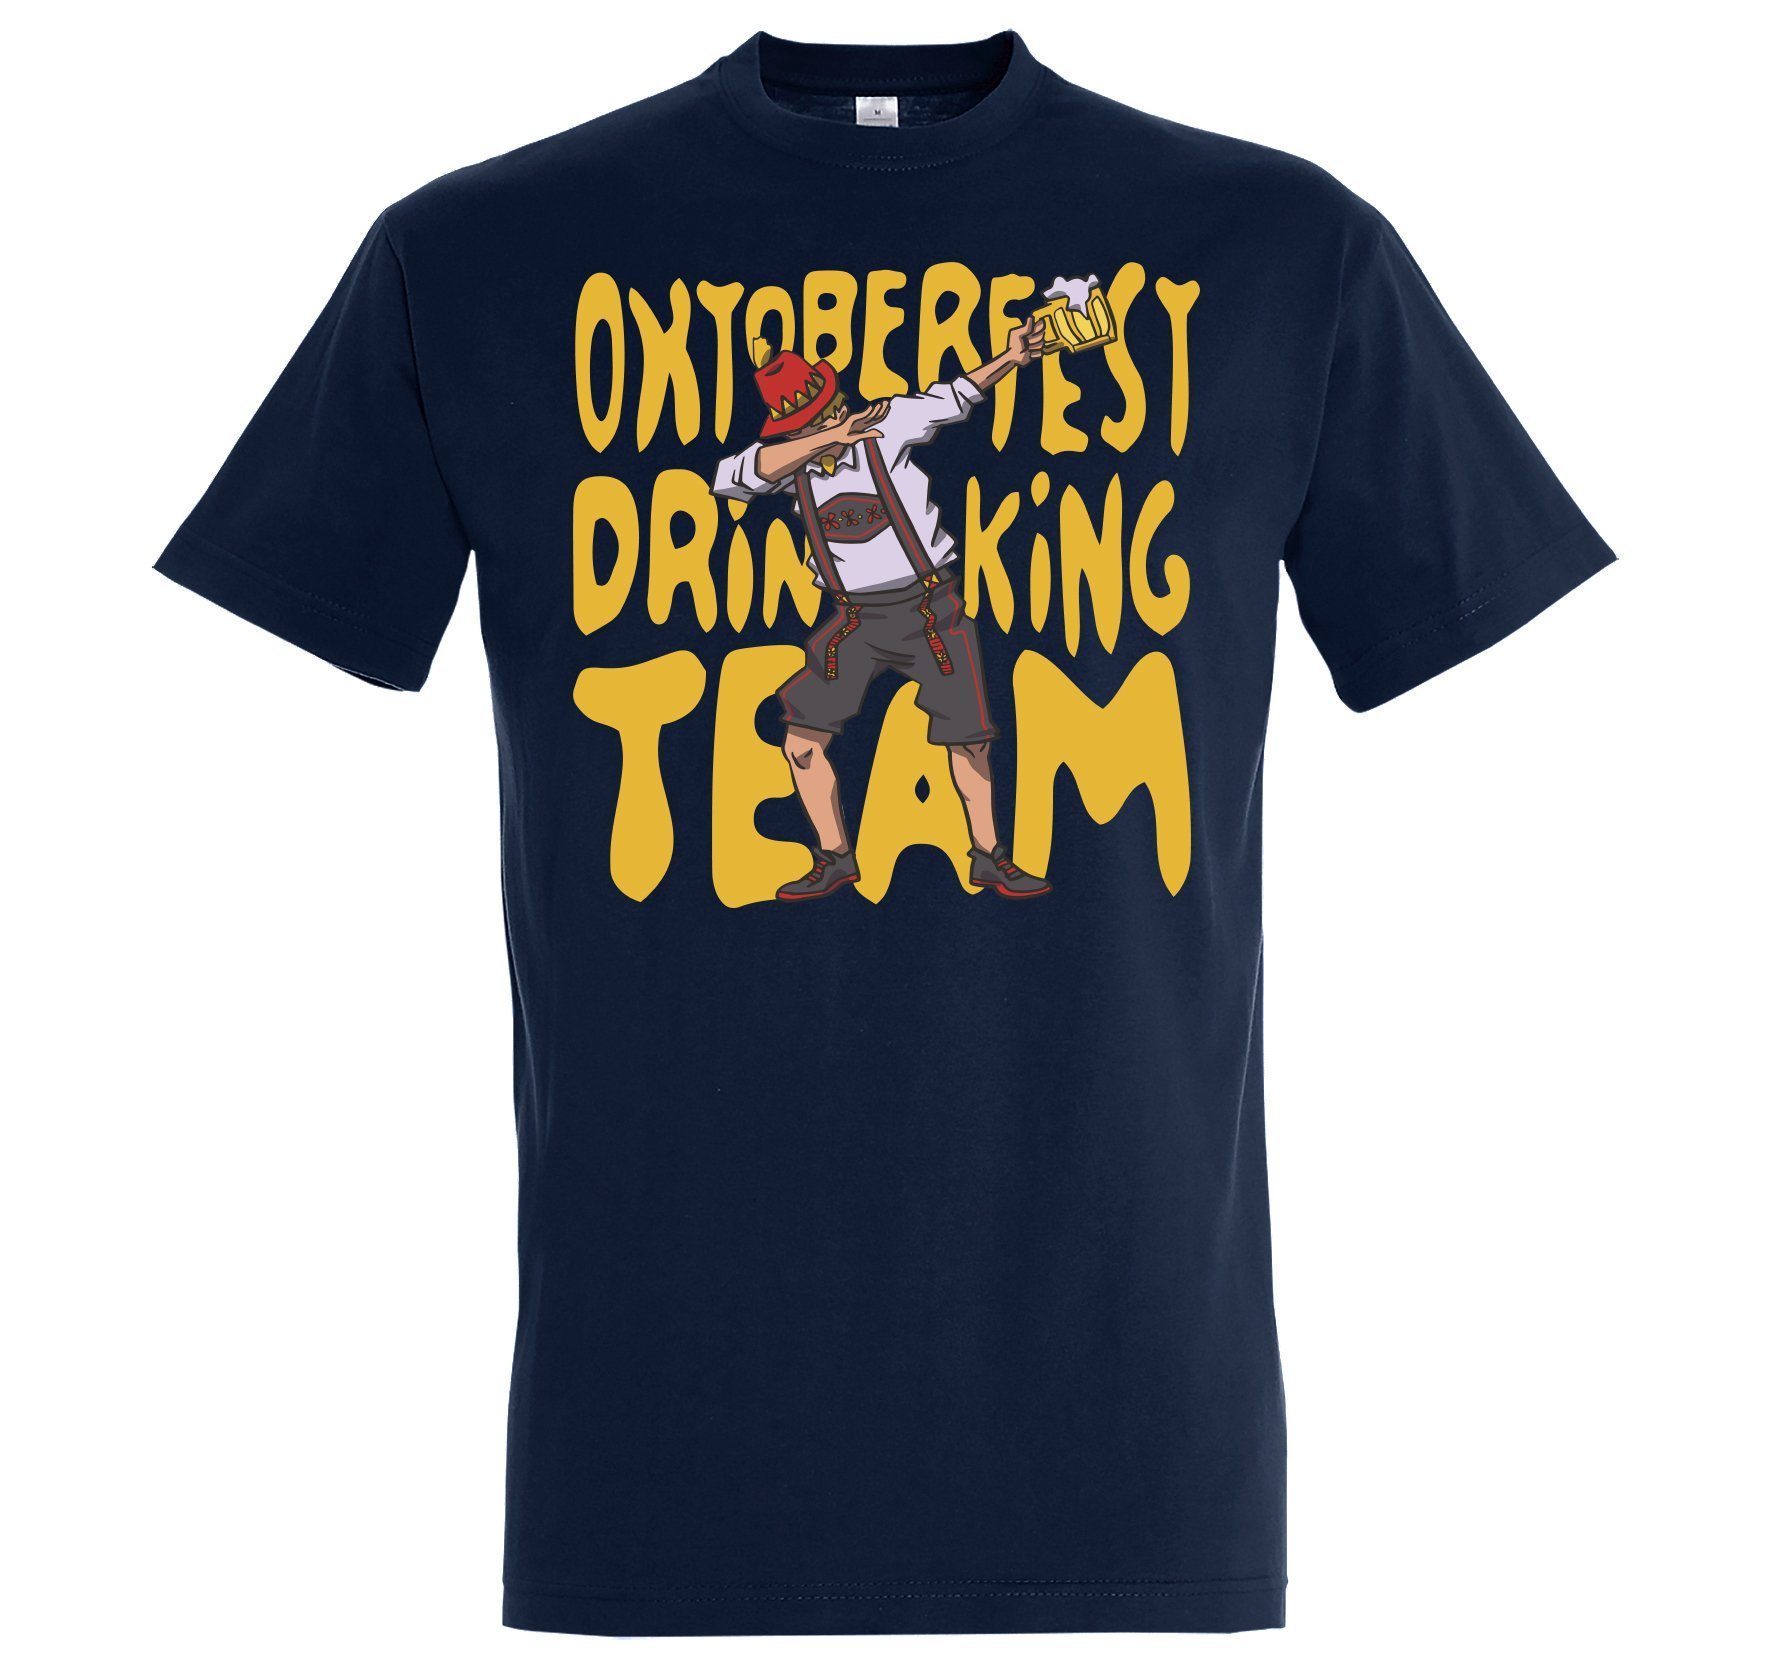 Print-Shirt mit Oktoberfest und T-Shirt Designz Team Herren Print Youth Navyblau Trachten lustigem Spruch Drinking